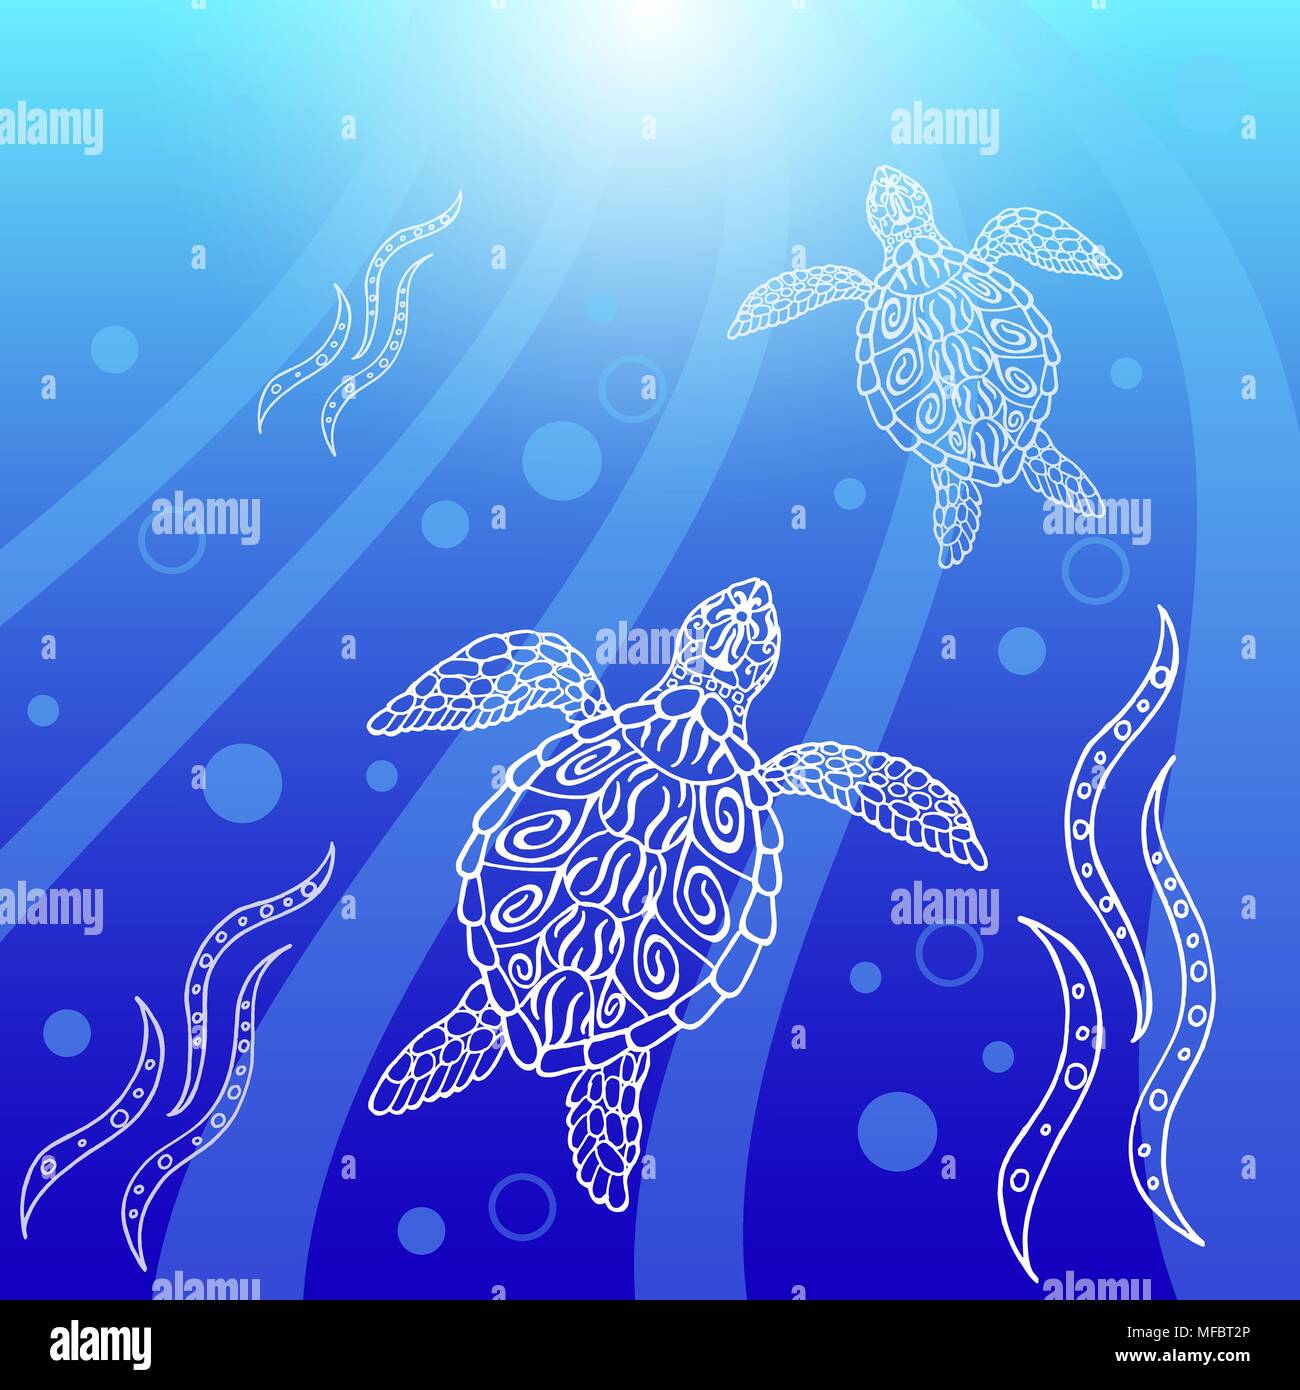 Le tartarughe di acqua swim up. Raggi, bolle, luce. Disegno in etnico stile aborigena. Sfondo blu Illustrazione Vettoriale